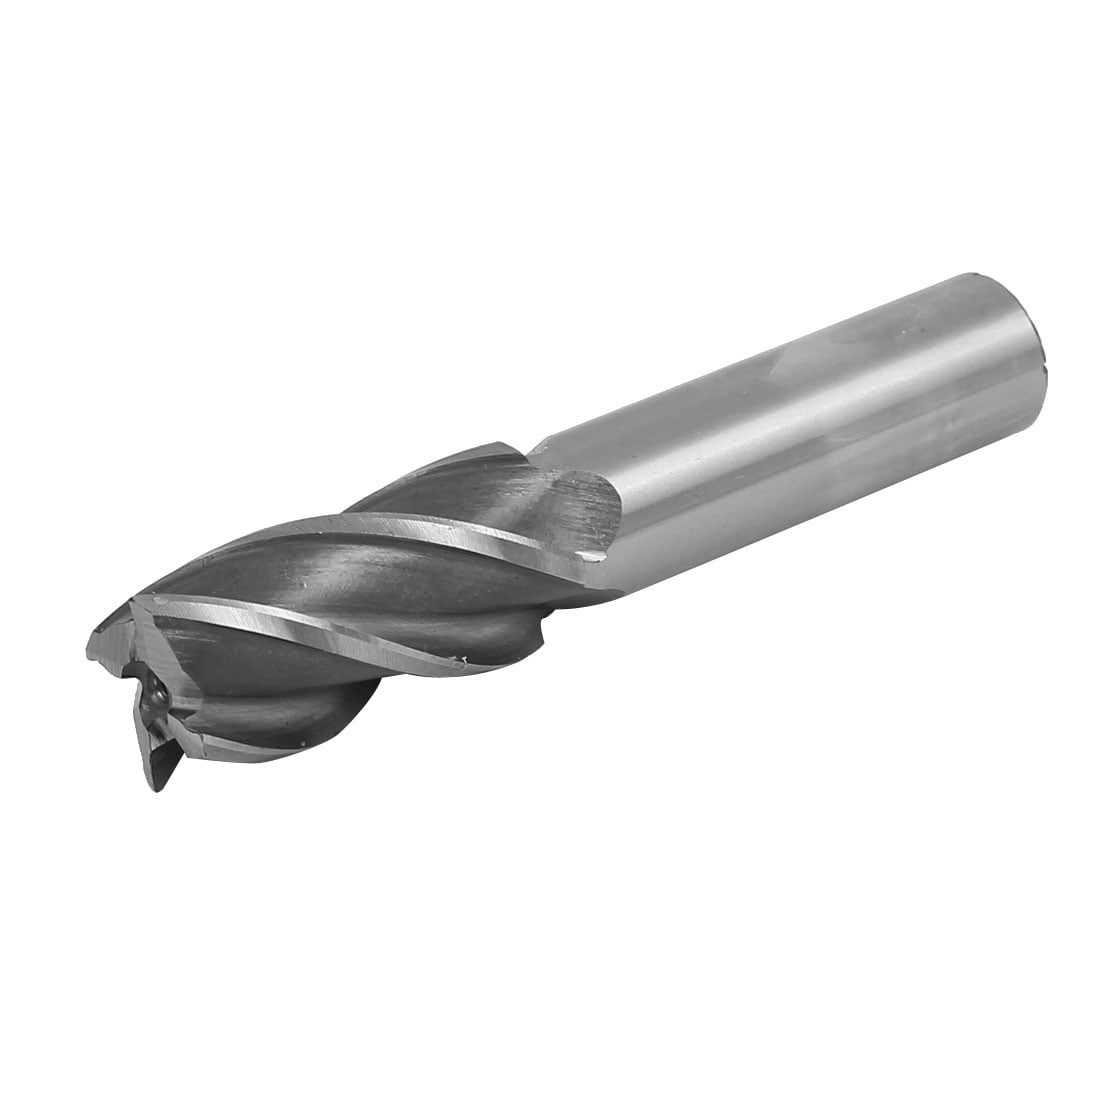 2-20mm Standard High Quality Metal HSS Twist Drill Bits  Straigth Shank 